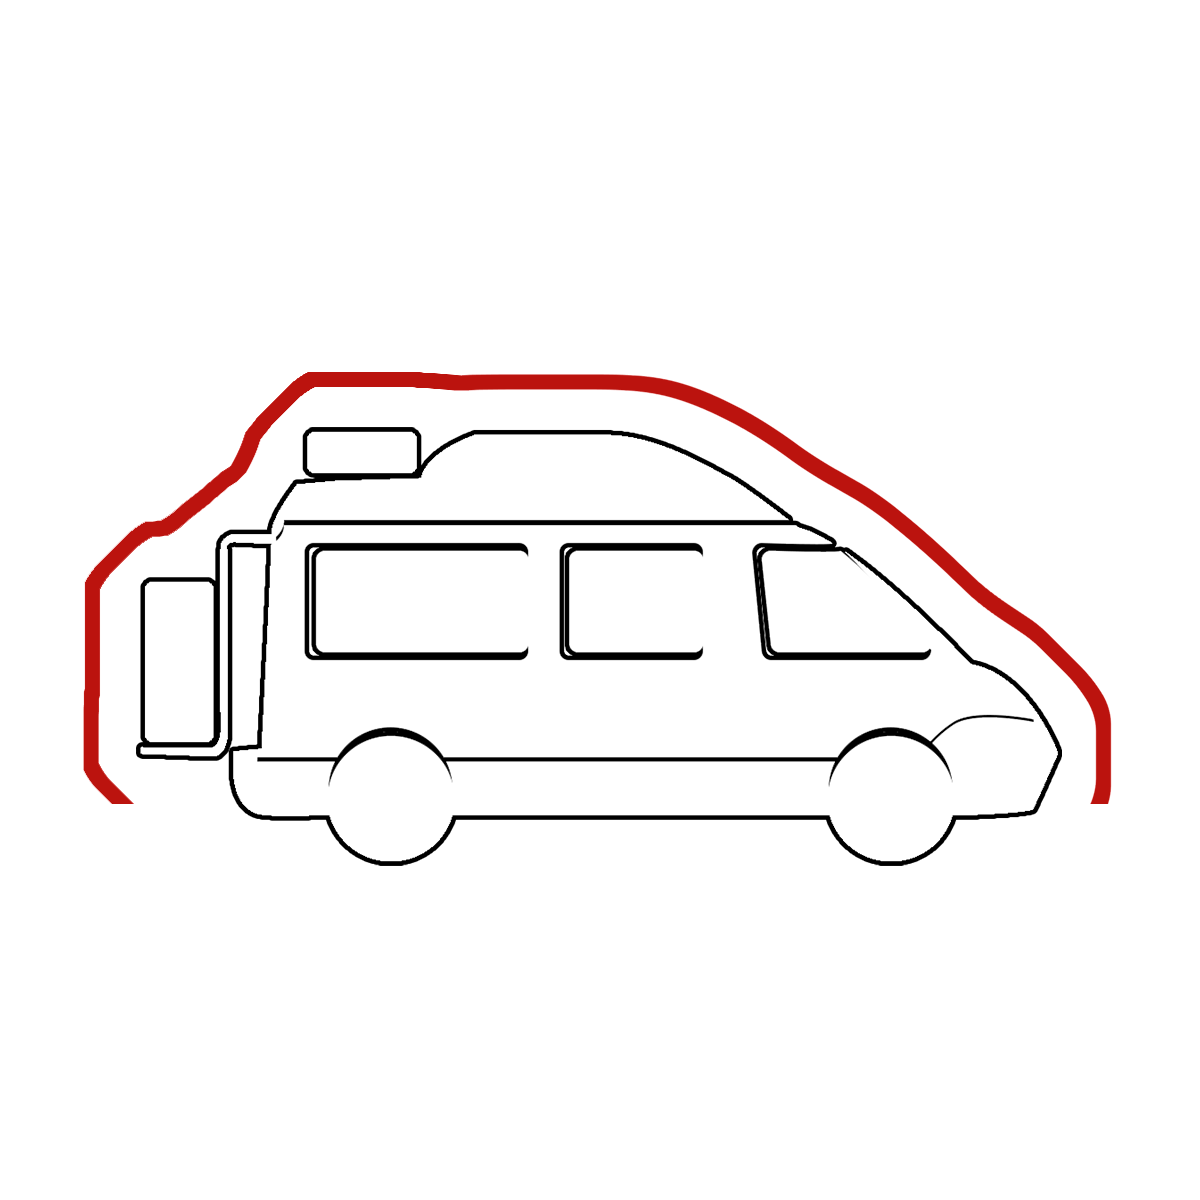 Housse intégrale Camping car Van aménagé